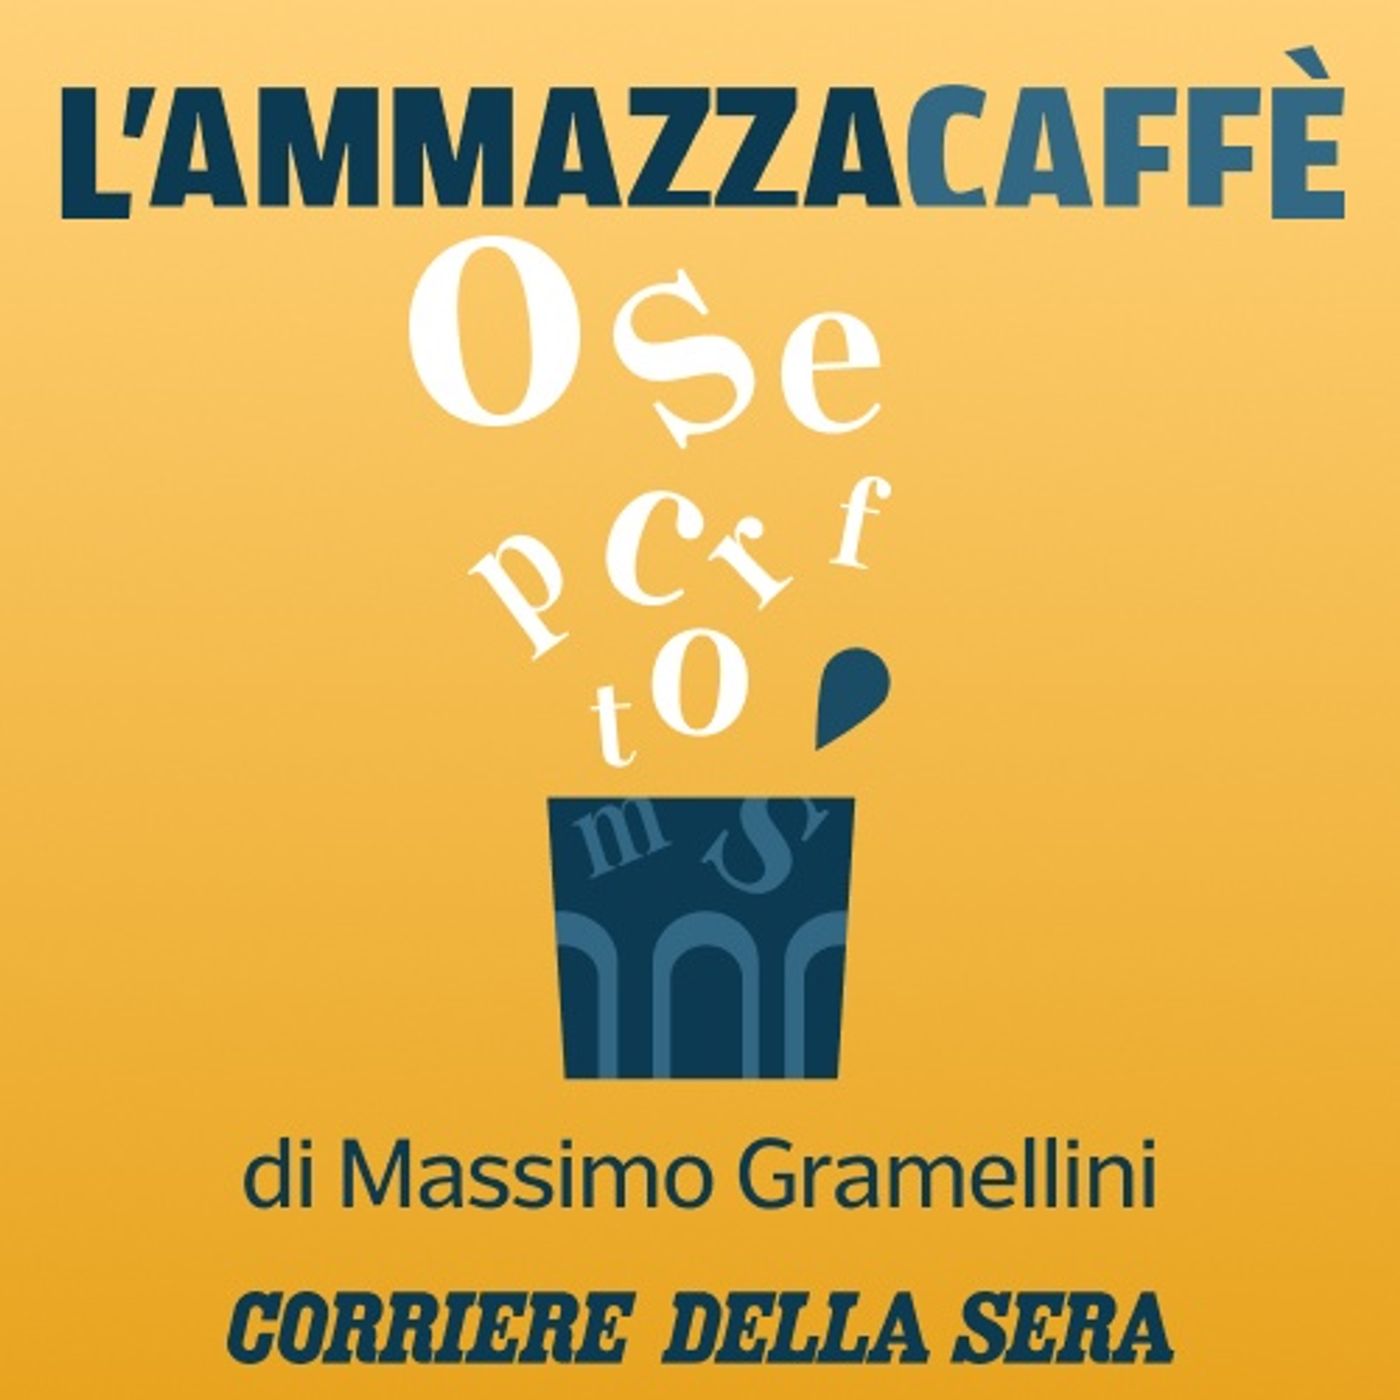 L’assemblea di condominio della politica: l’Ammazzacaffè di Massimo Gramellini